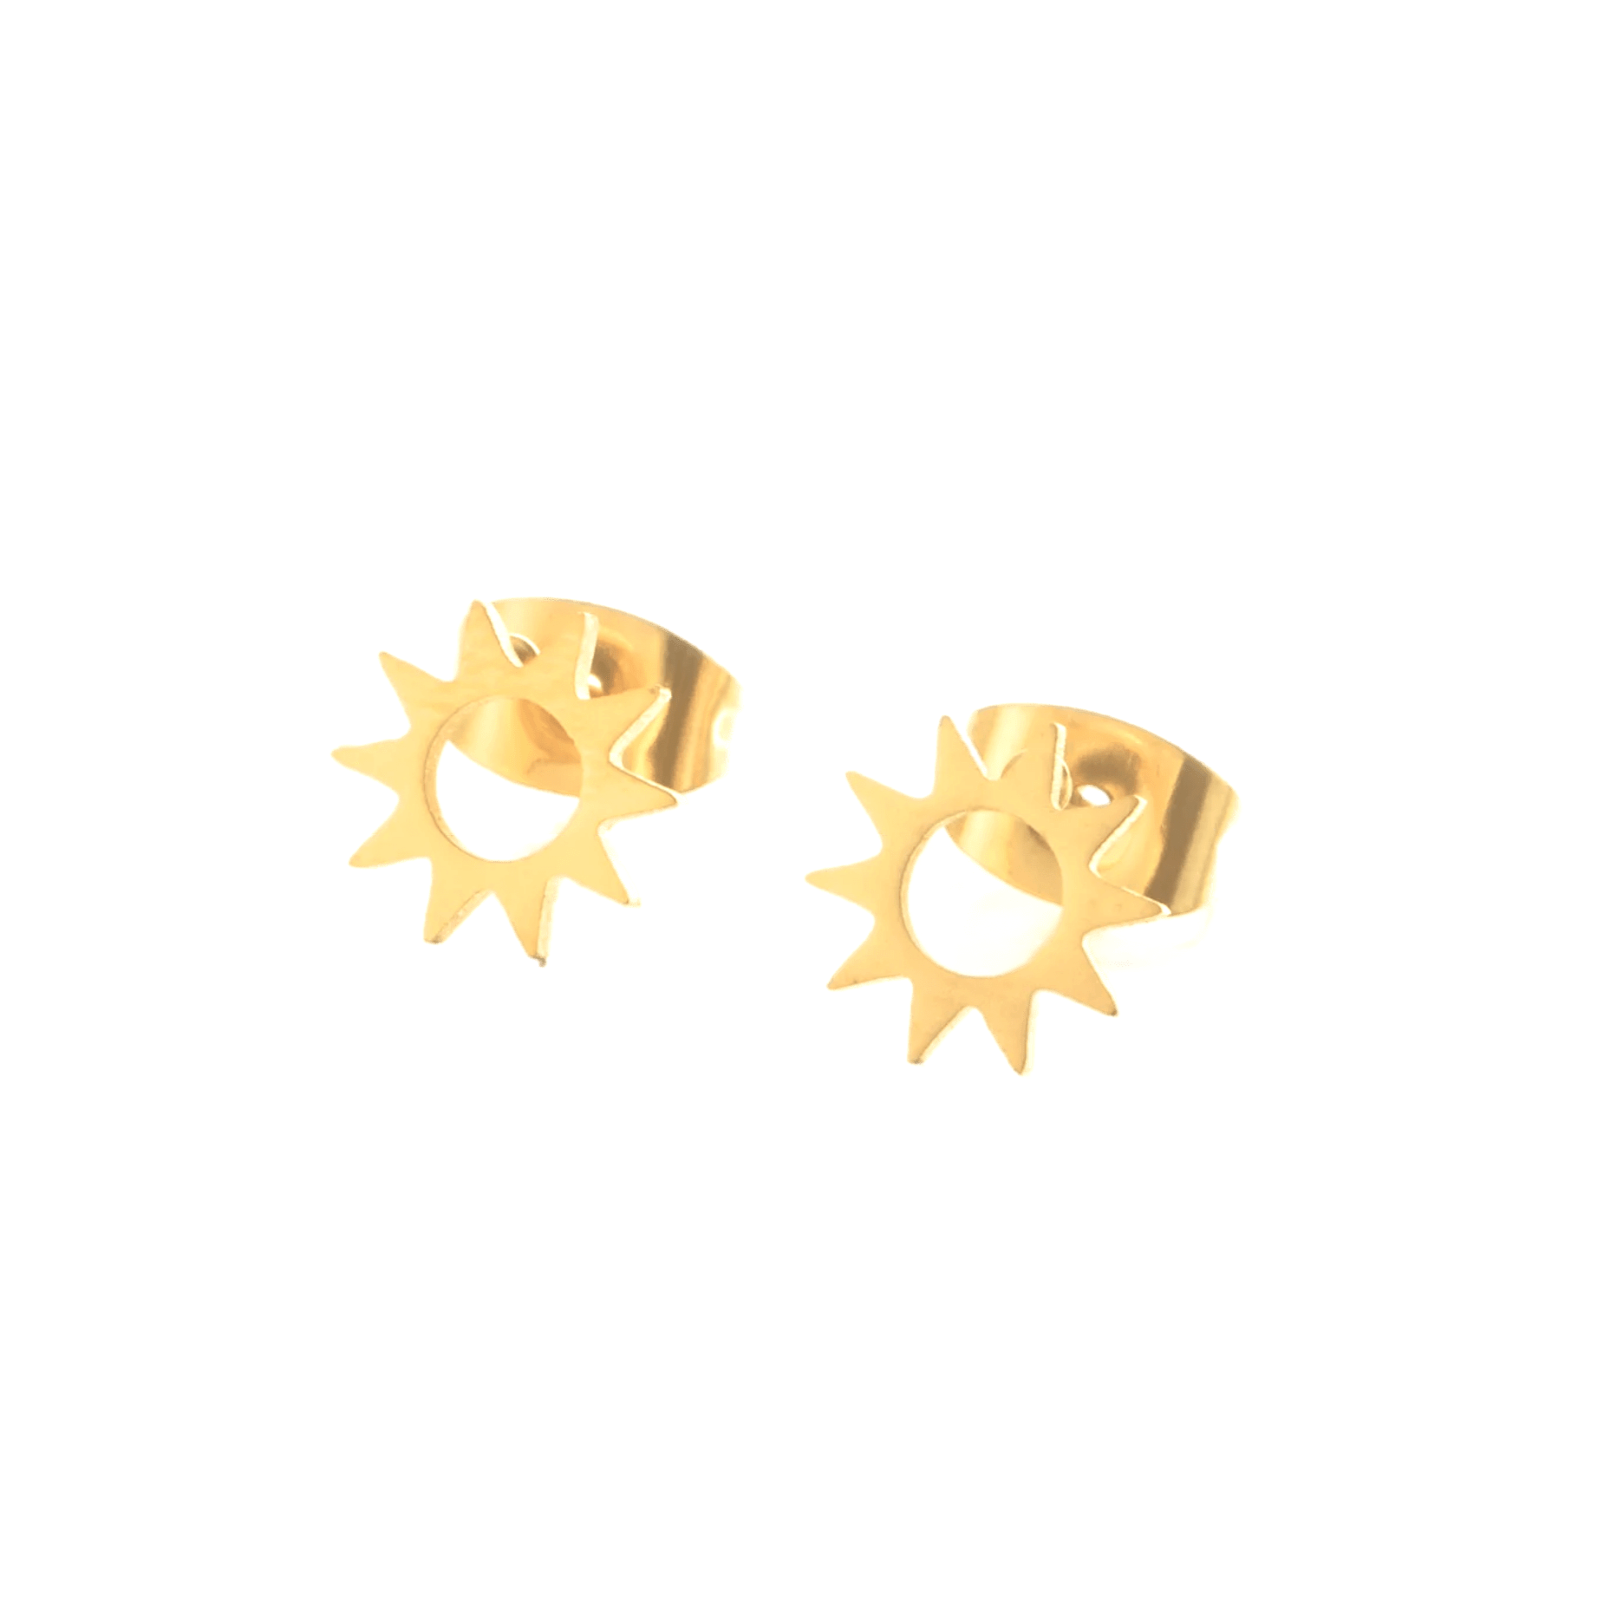 Boucles d'oreilles acier or étoile soleil. Détails produit : Couleur or. Acier doré.  Version couleur argent